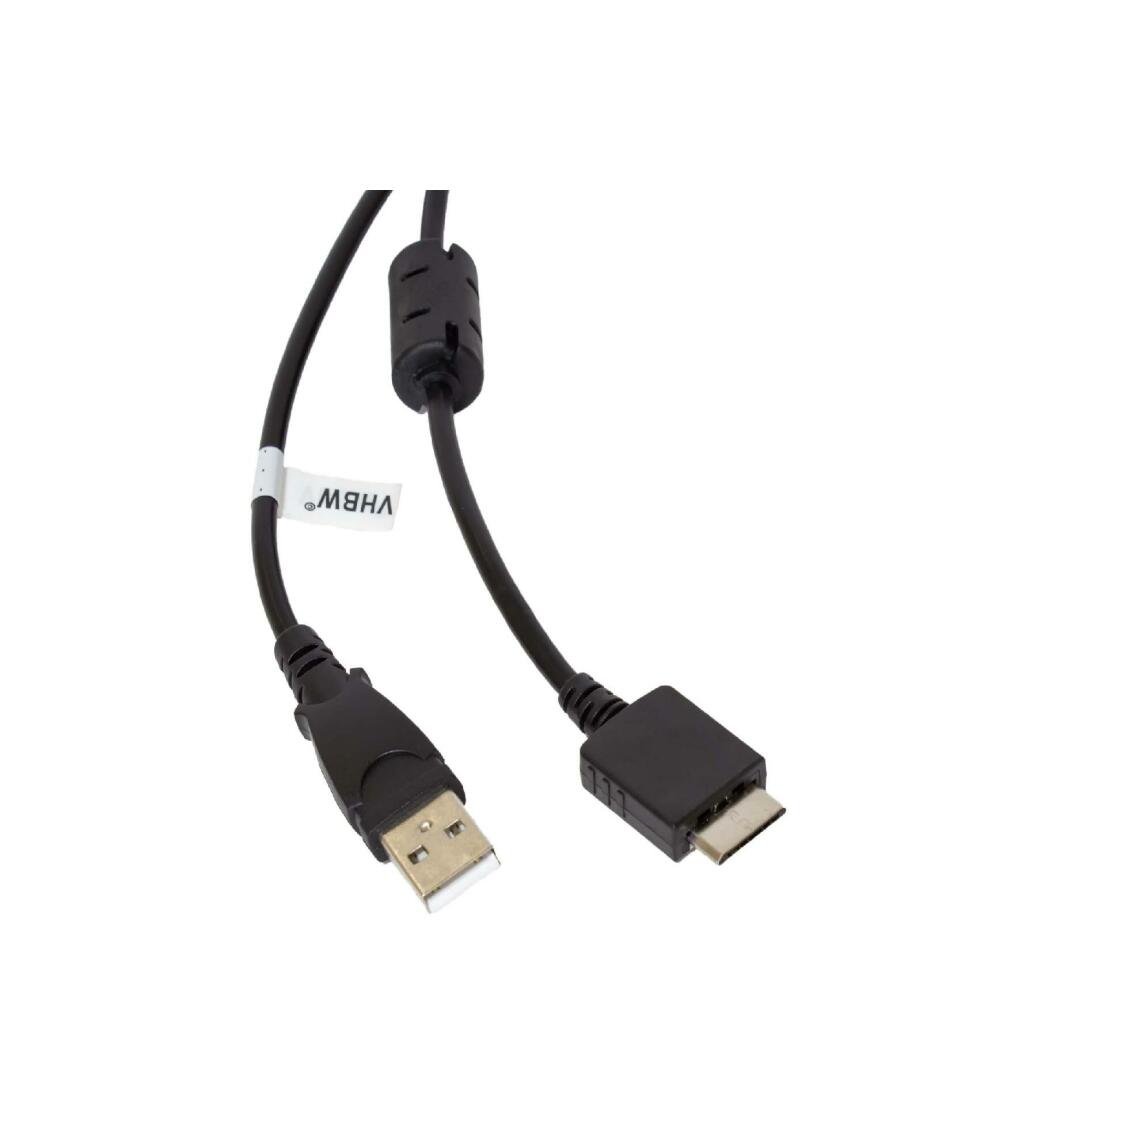 Vhbw - vhbw câble de données USB (type A sur lecteur MP3) câble de chargement compatible avec Sony Walkman NWZ-S718FBNC, NWZ-S736F lecteur MP3 - noir, 150cm - Alimentation modulaire